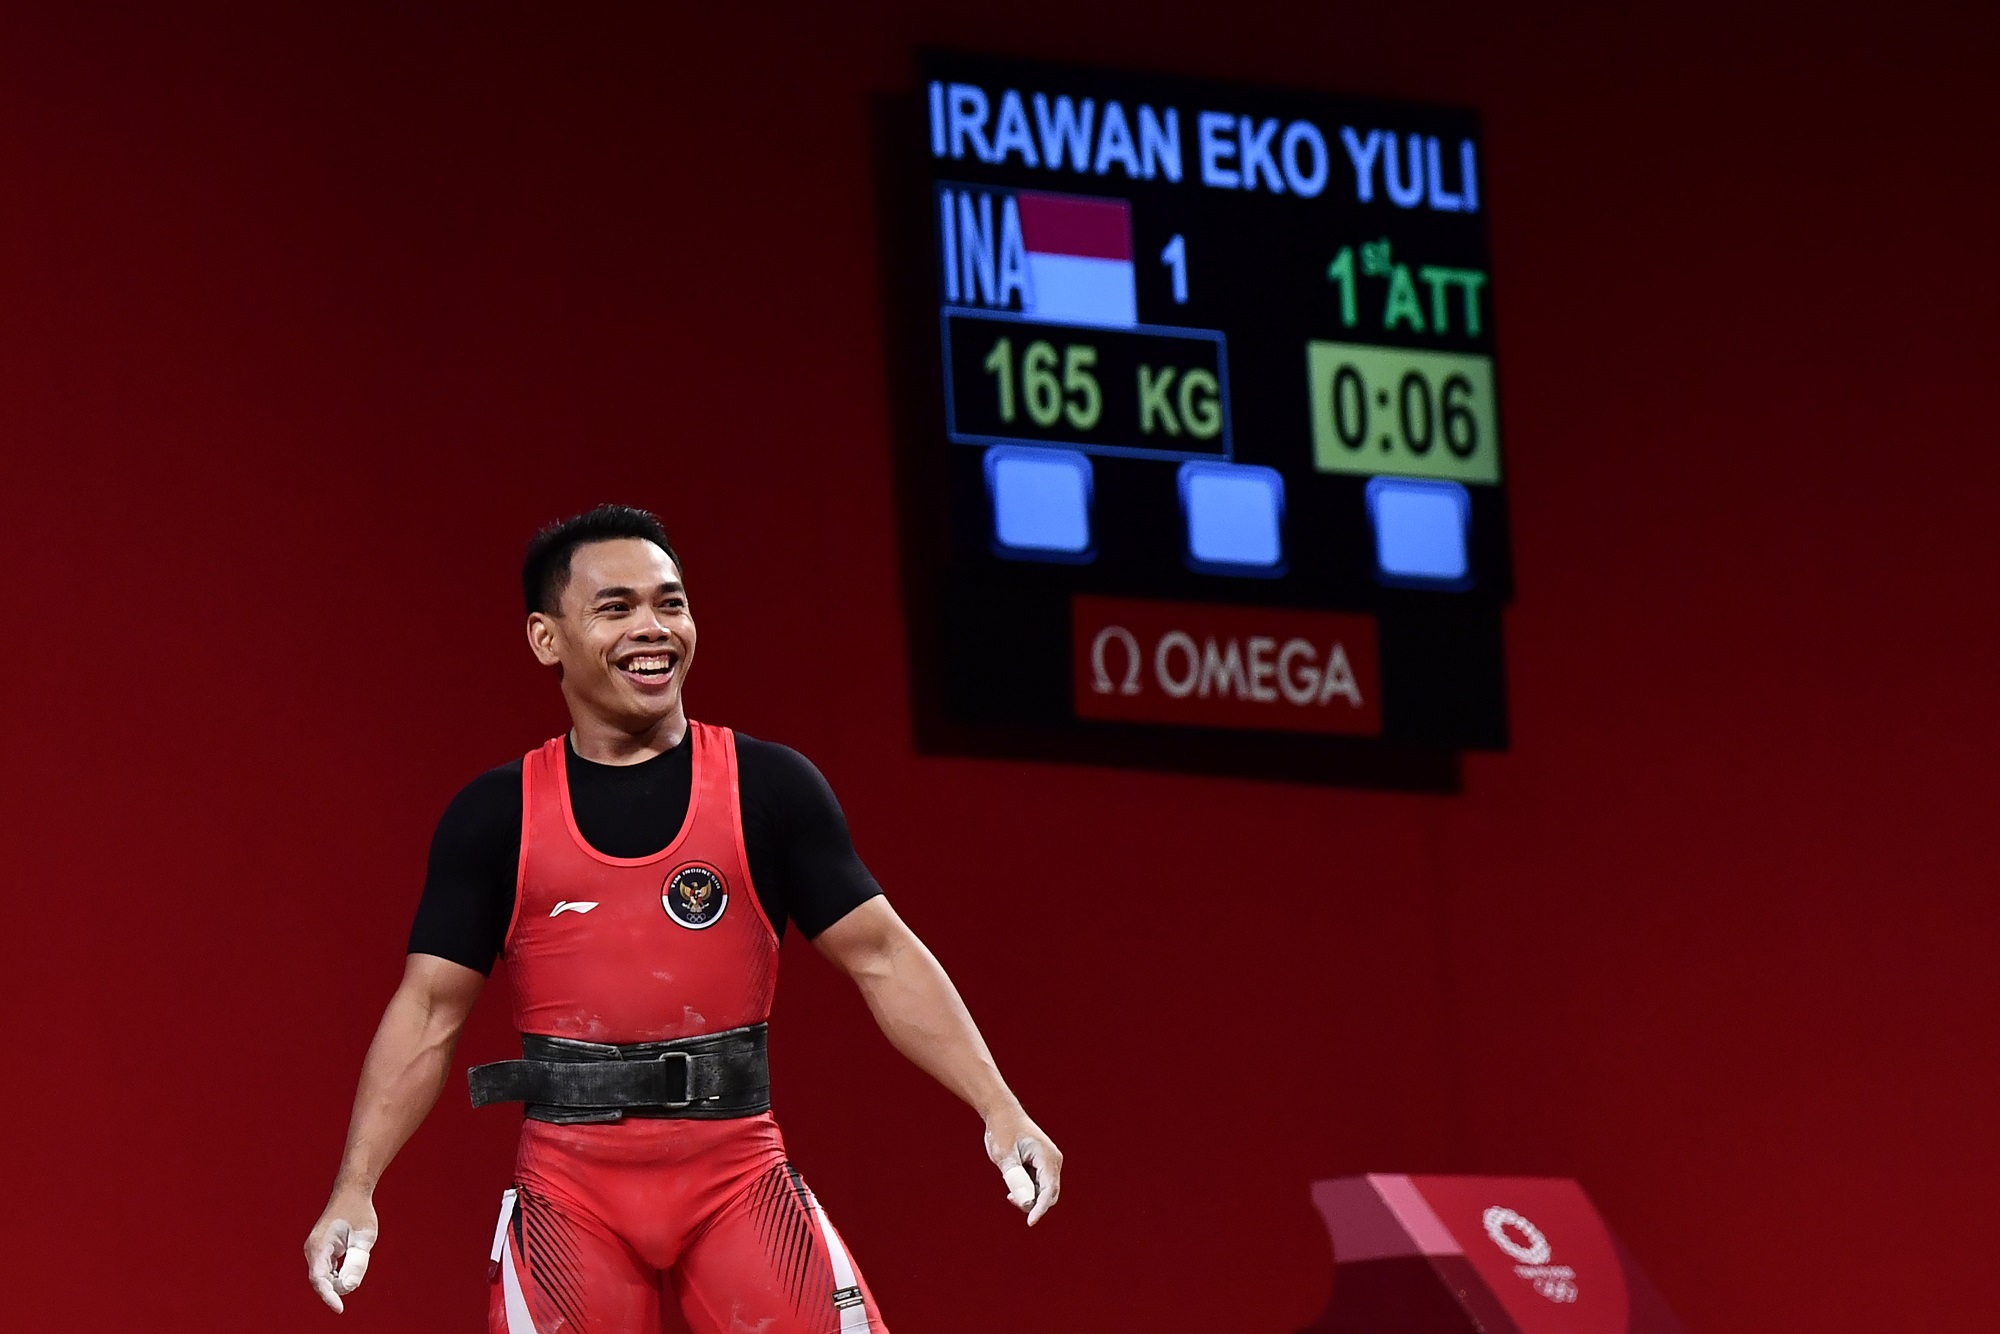 Eko Yuli, Olimpian Indonesia dengan Medali Terbanyak